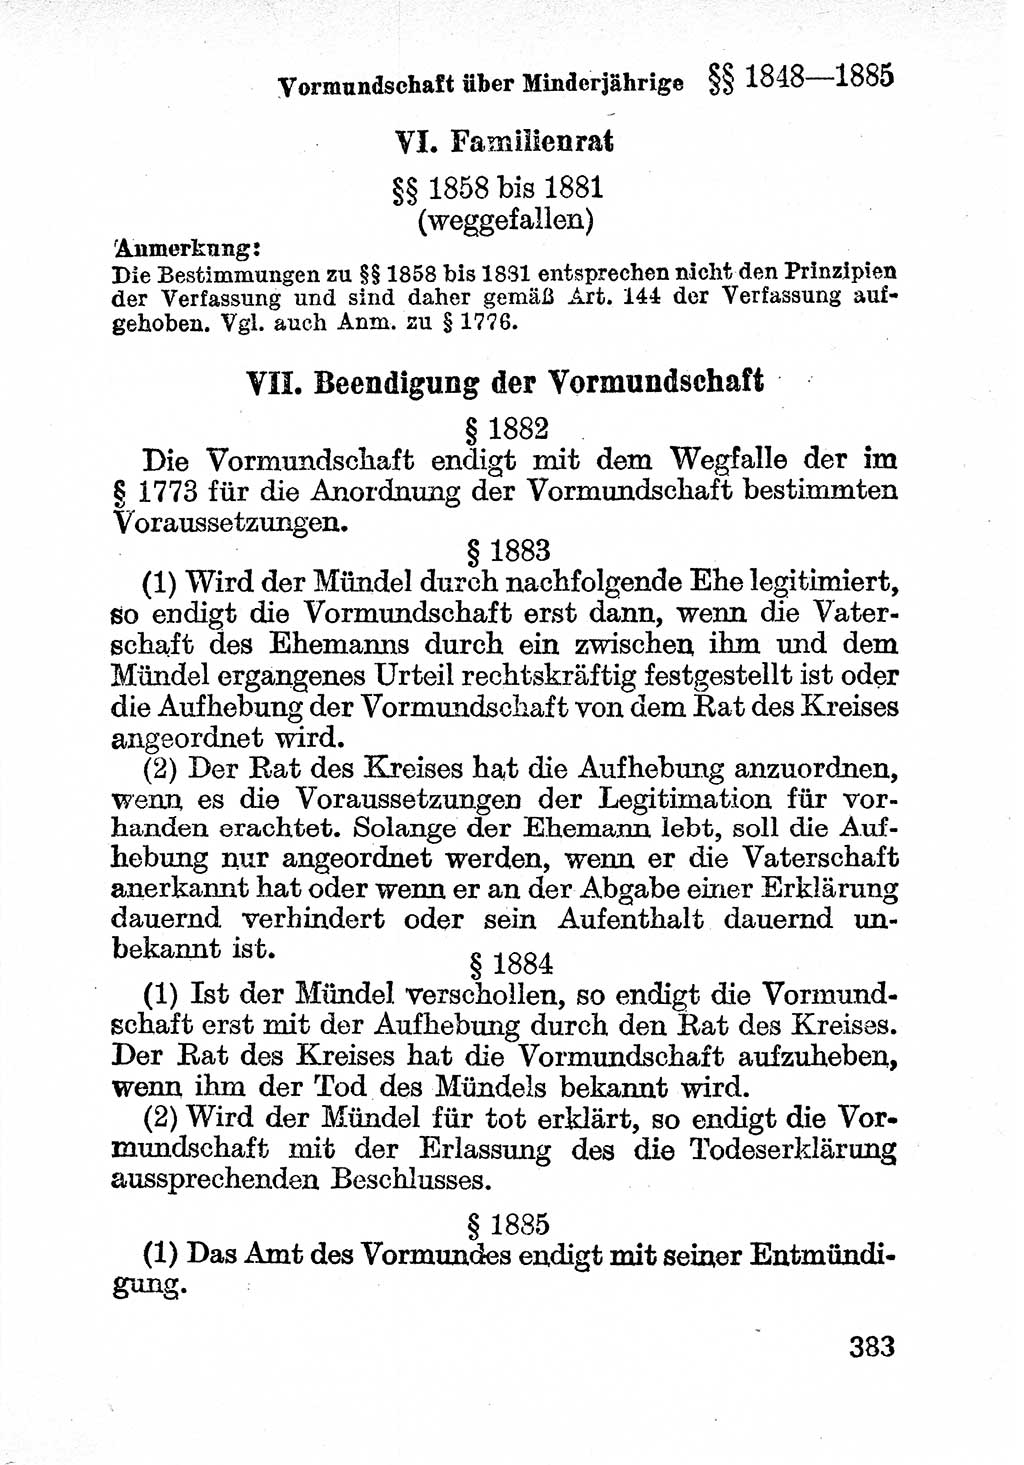 Bürgerliches Gesetzbuch (BGB) nebst wichtigen Nebengesetzen [Deutsche Demokratische Republik (DDR)] 1956, Seite 383 (BGB Nebenges. DDR 1956, S. 383)